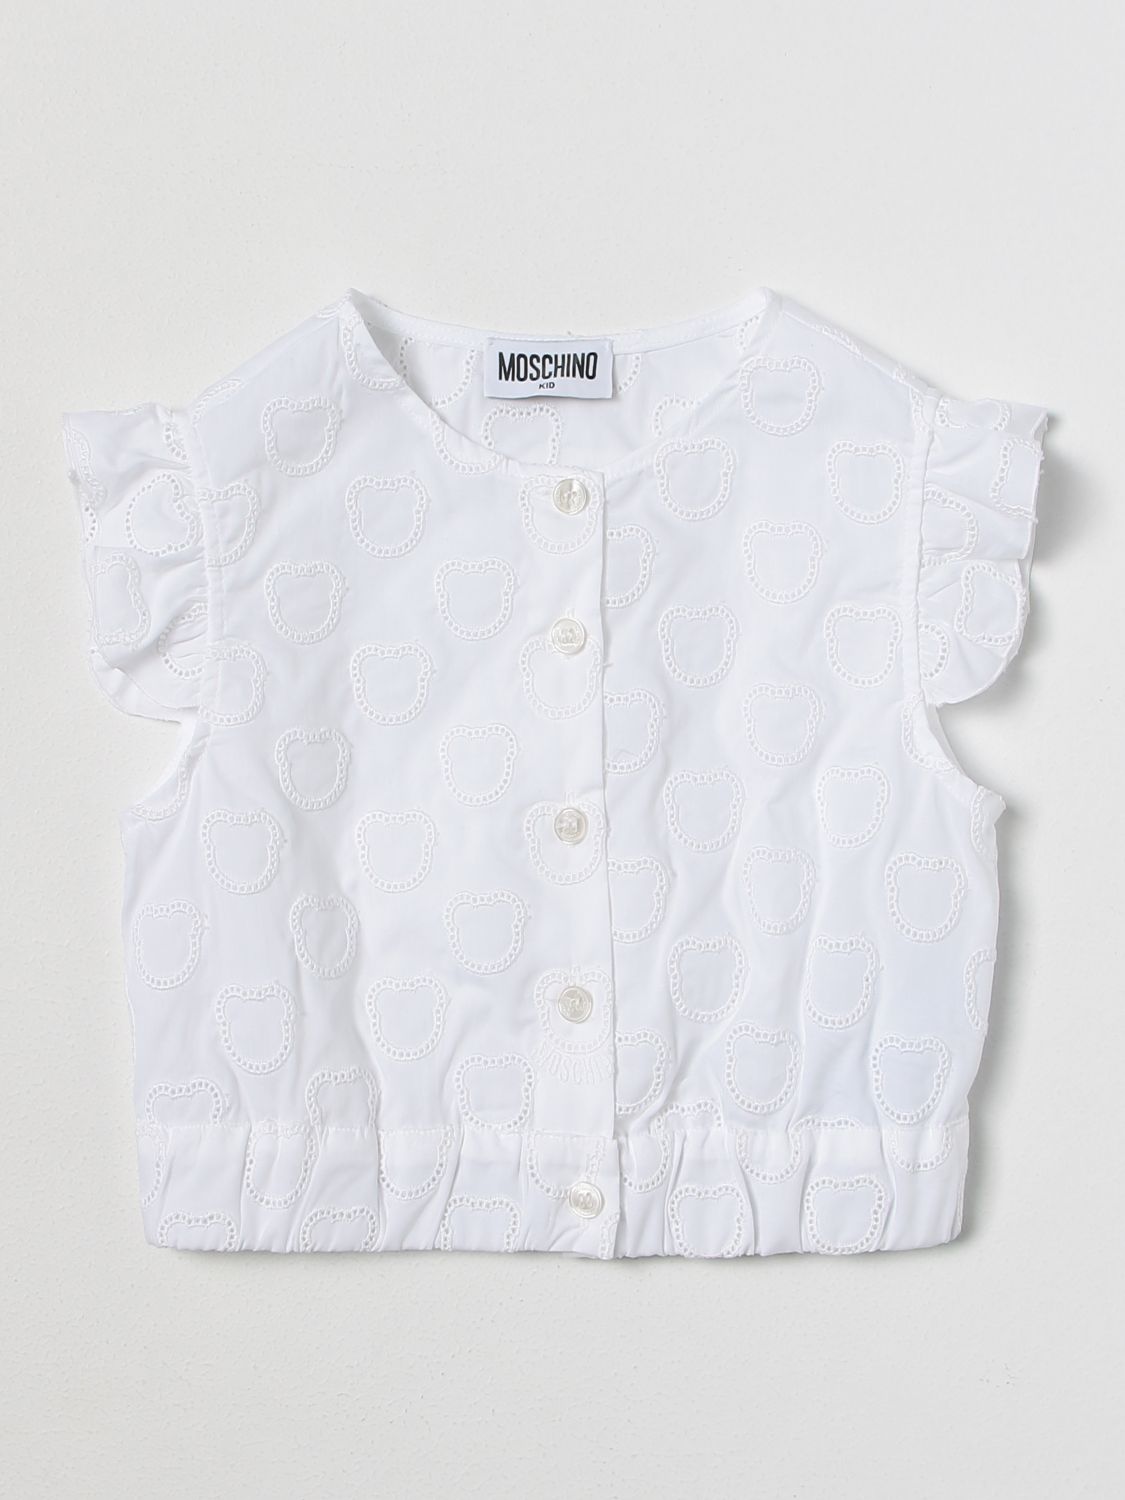 MOSCHINO KID: jacket for girls - White | Moschino Kid jacket ...